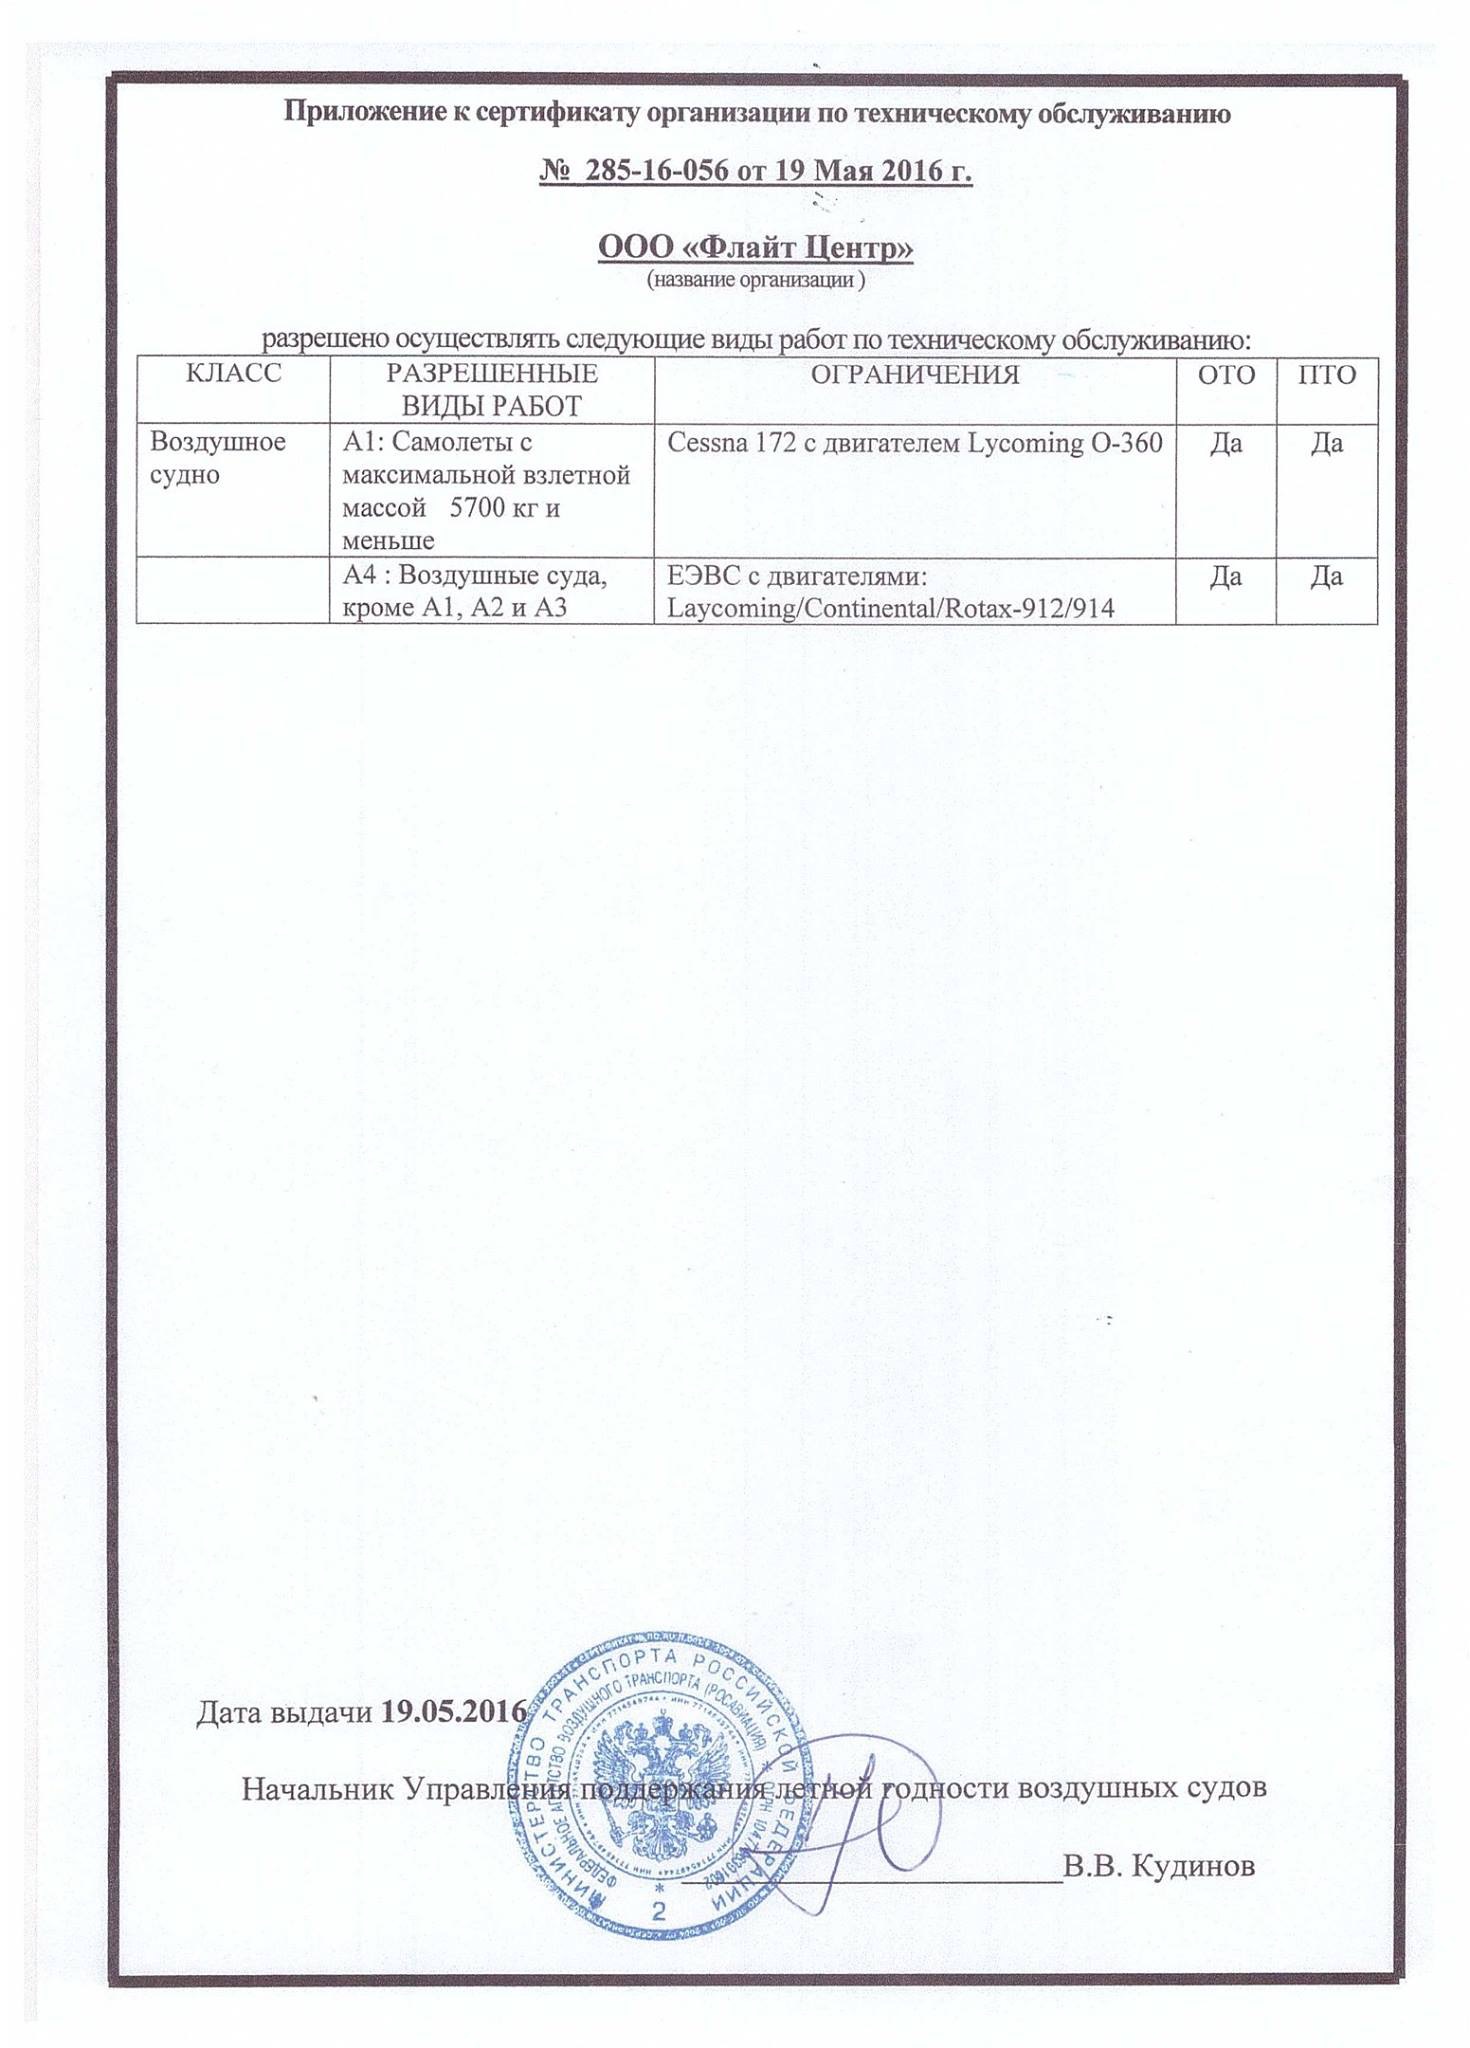 сертификат на техническое обслуживание самолётов Цессна в России